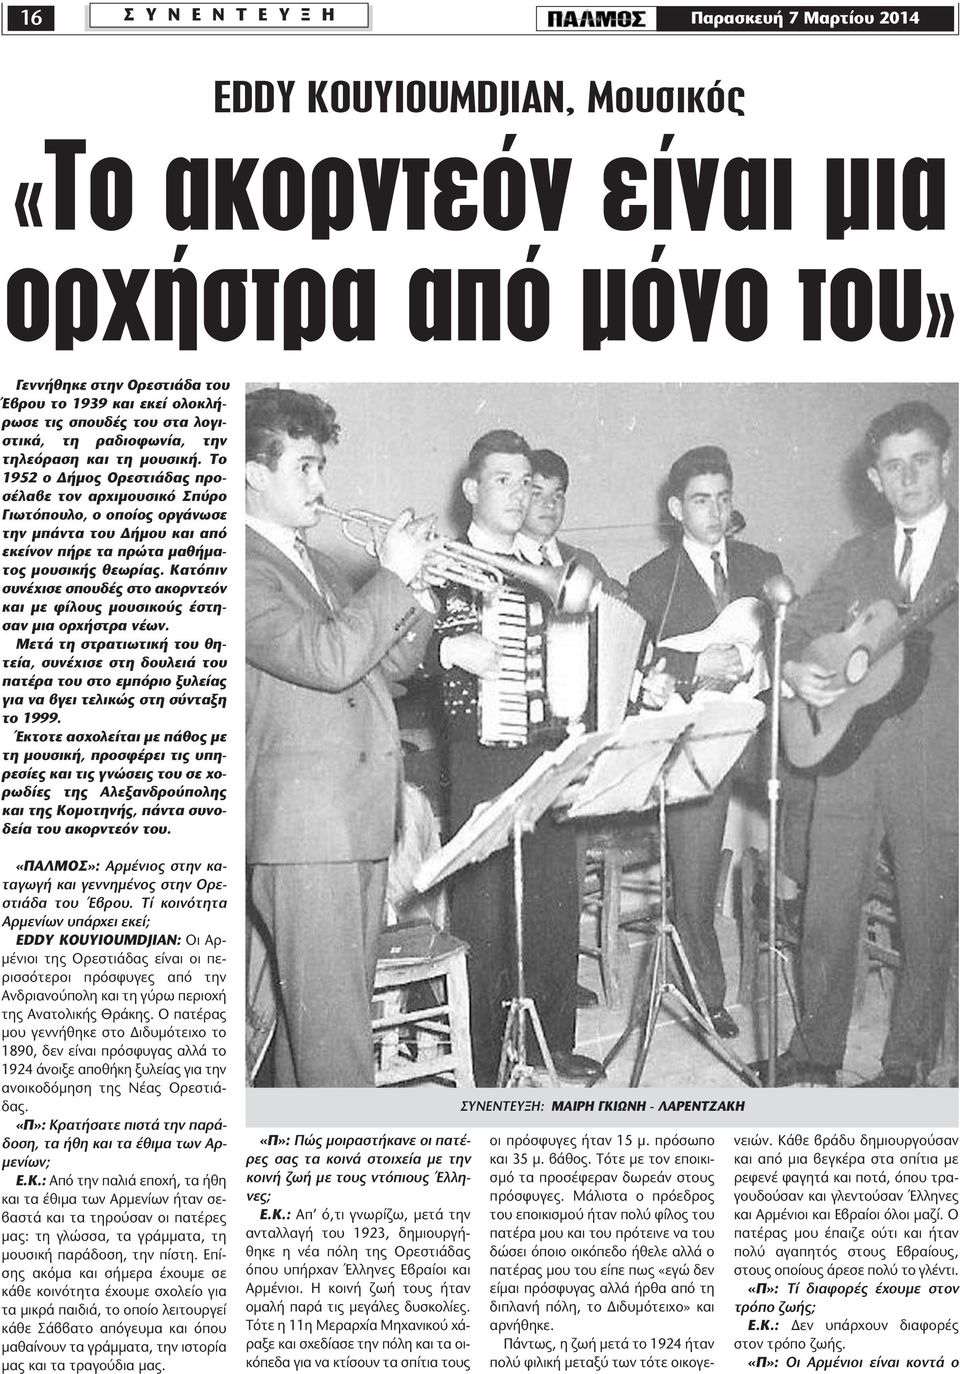 Το 1952 ο ήµος Ορεστιάδας προσέλαβε τον αρχιµουσικό Σπύρο Γιωτόπουλο, ο οποίος οργάνωσε την µπάντα του ήµου και από εκείνον πήρε τα πρώτα µαθήµατος µουσικής θεωρίας.